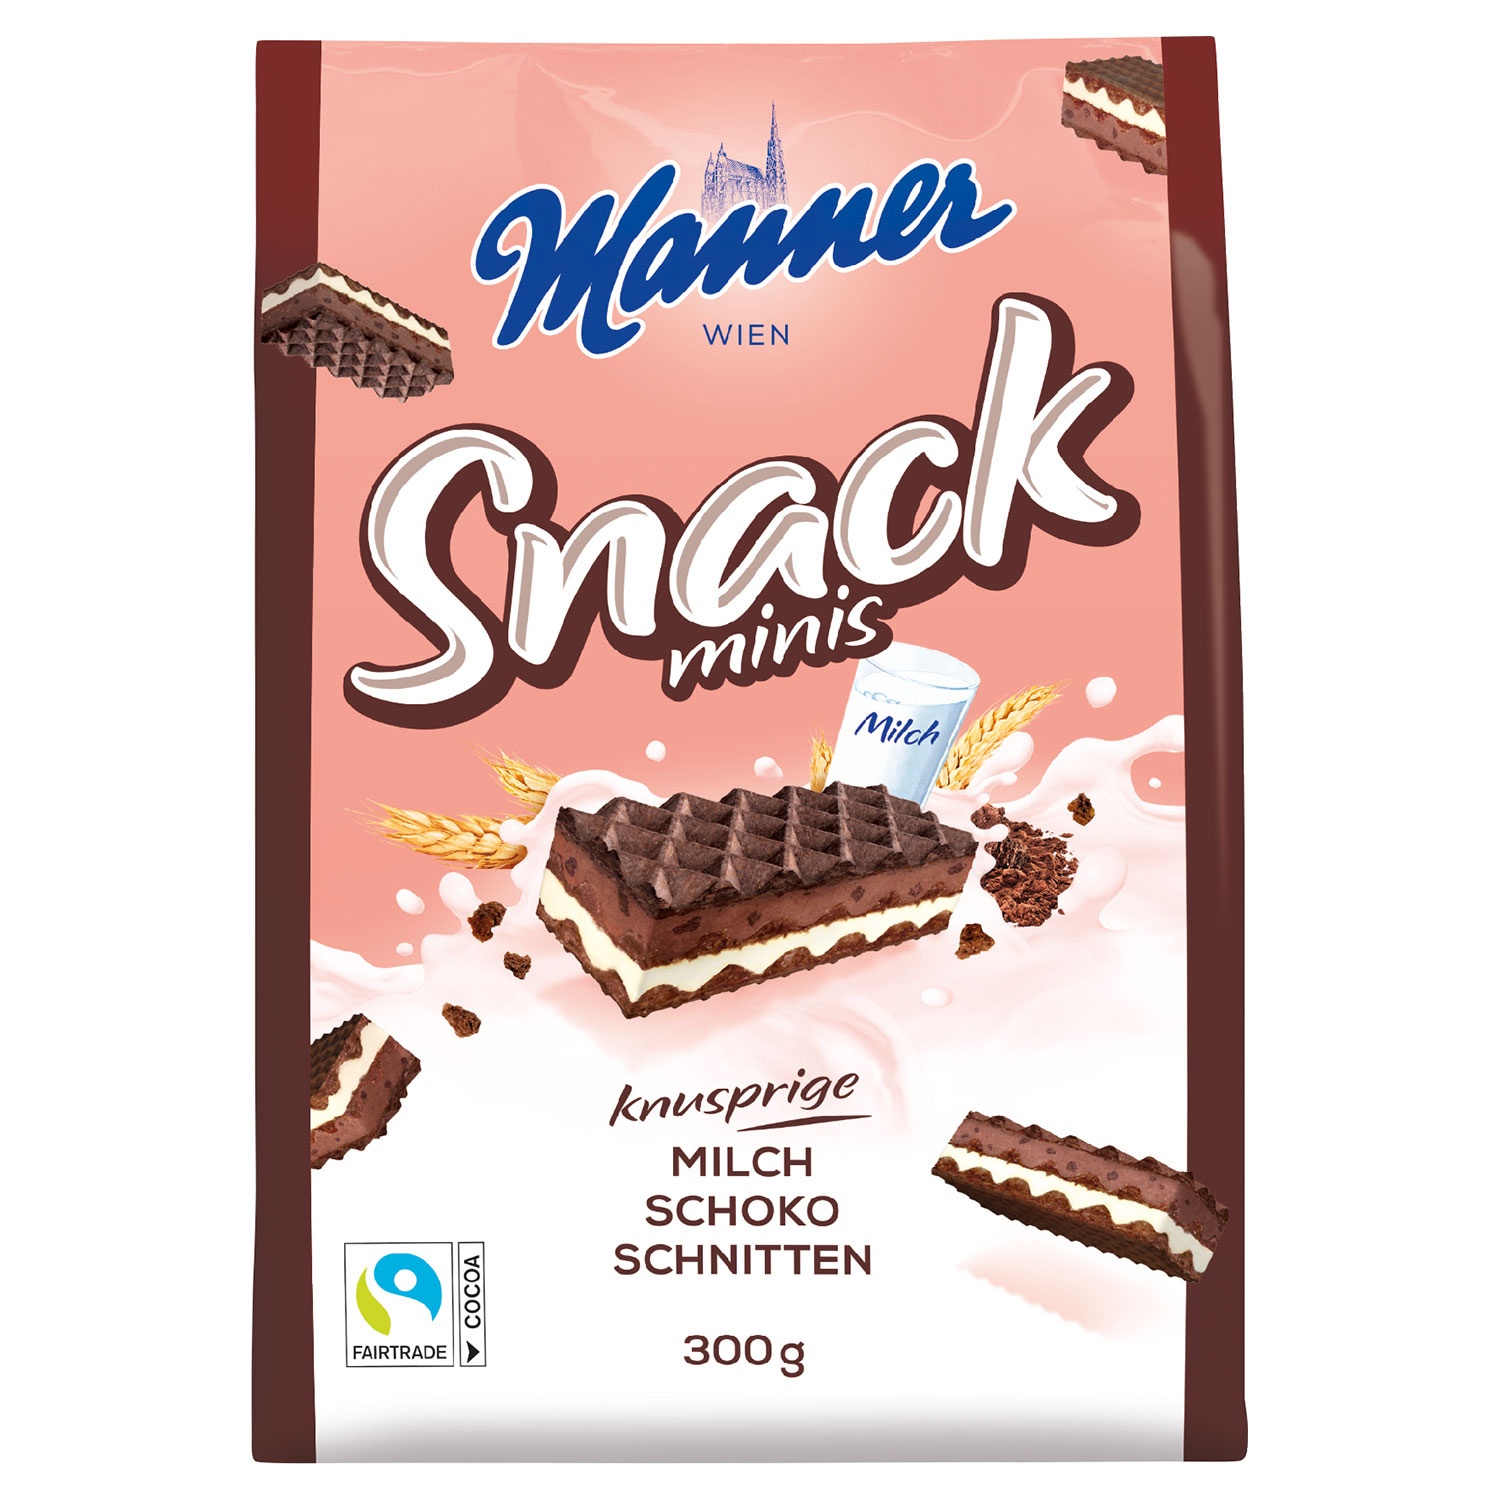 MANNER Snack-Minis 300 g